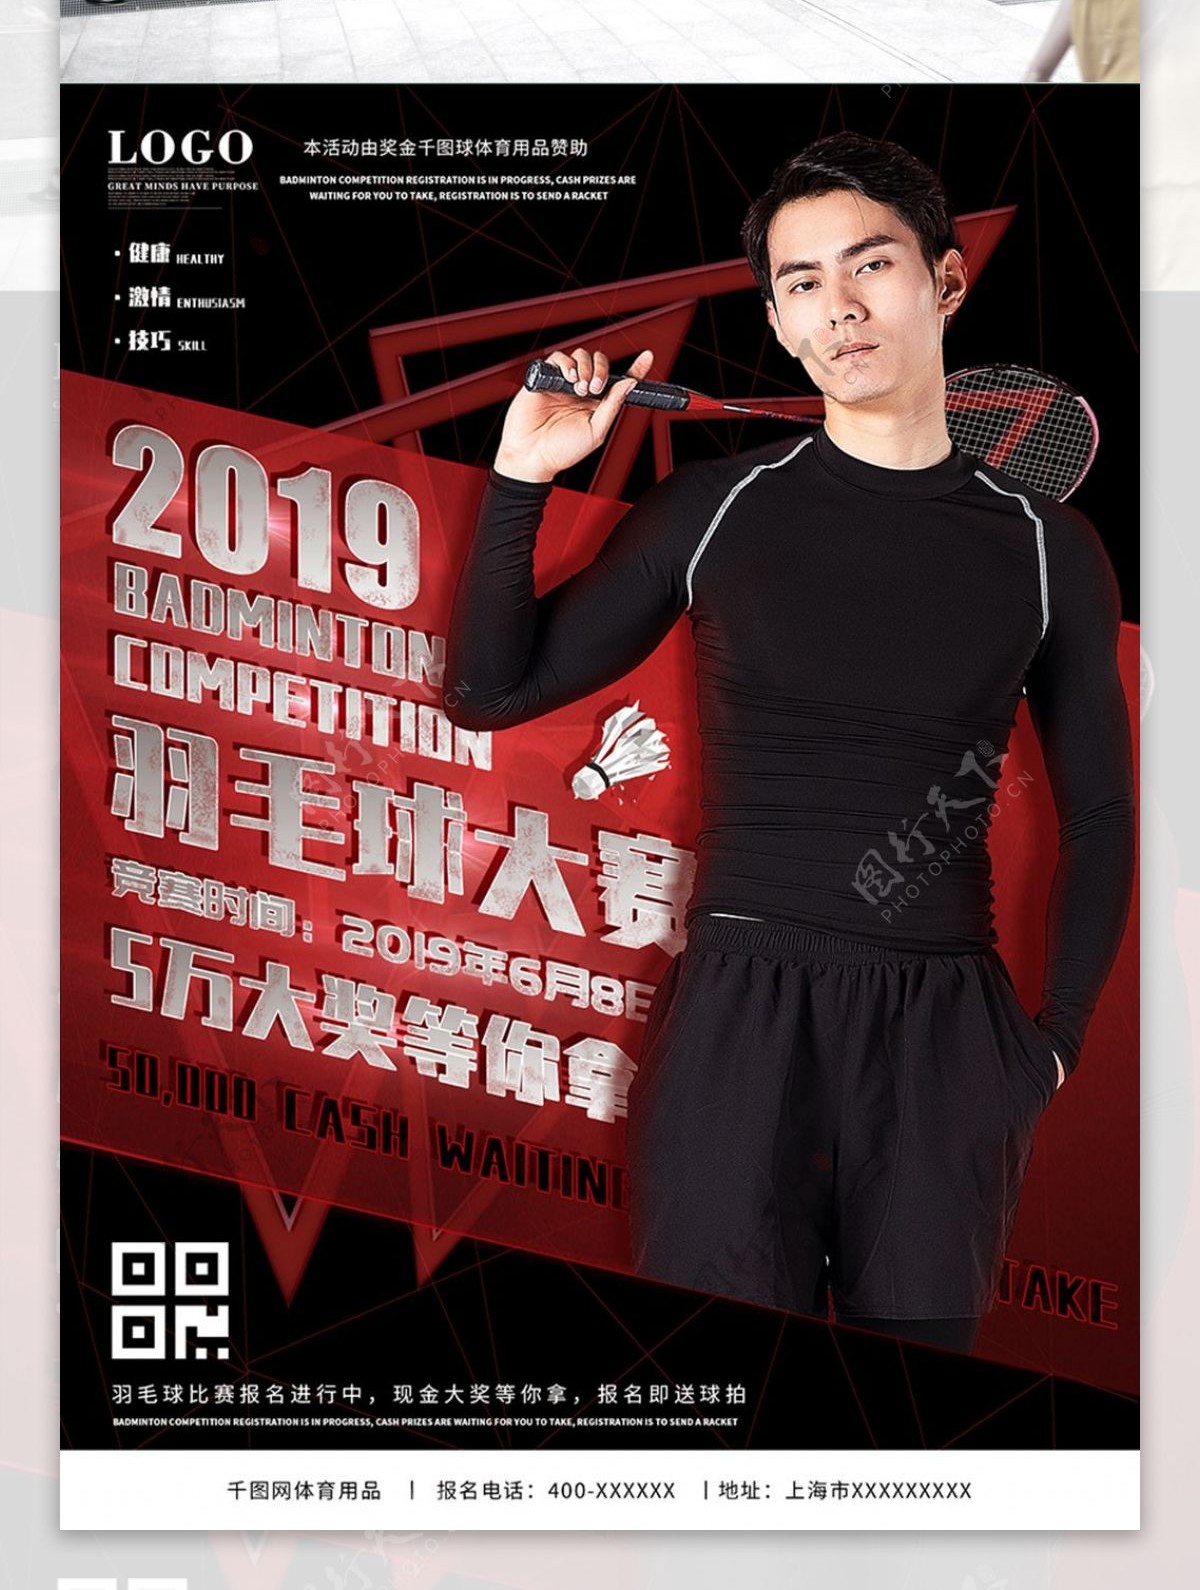 体育用品羽毛球比赛宣传促销海报